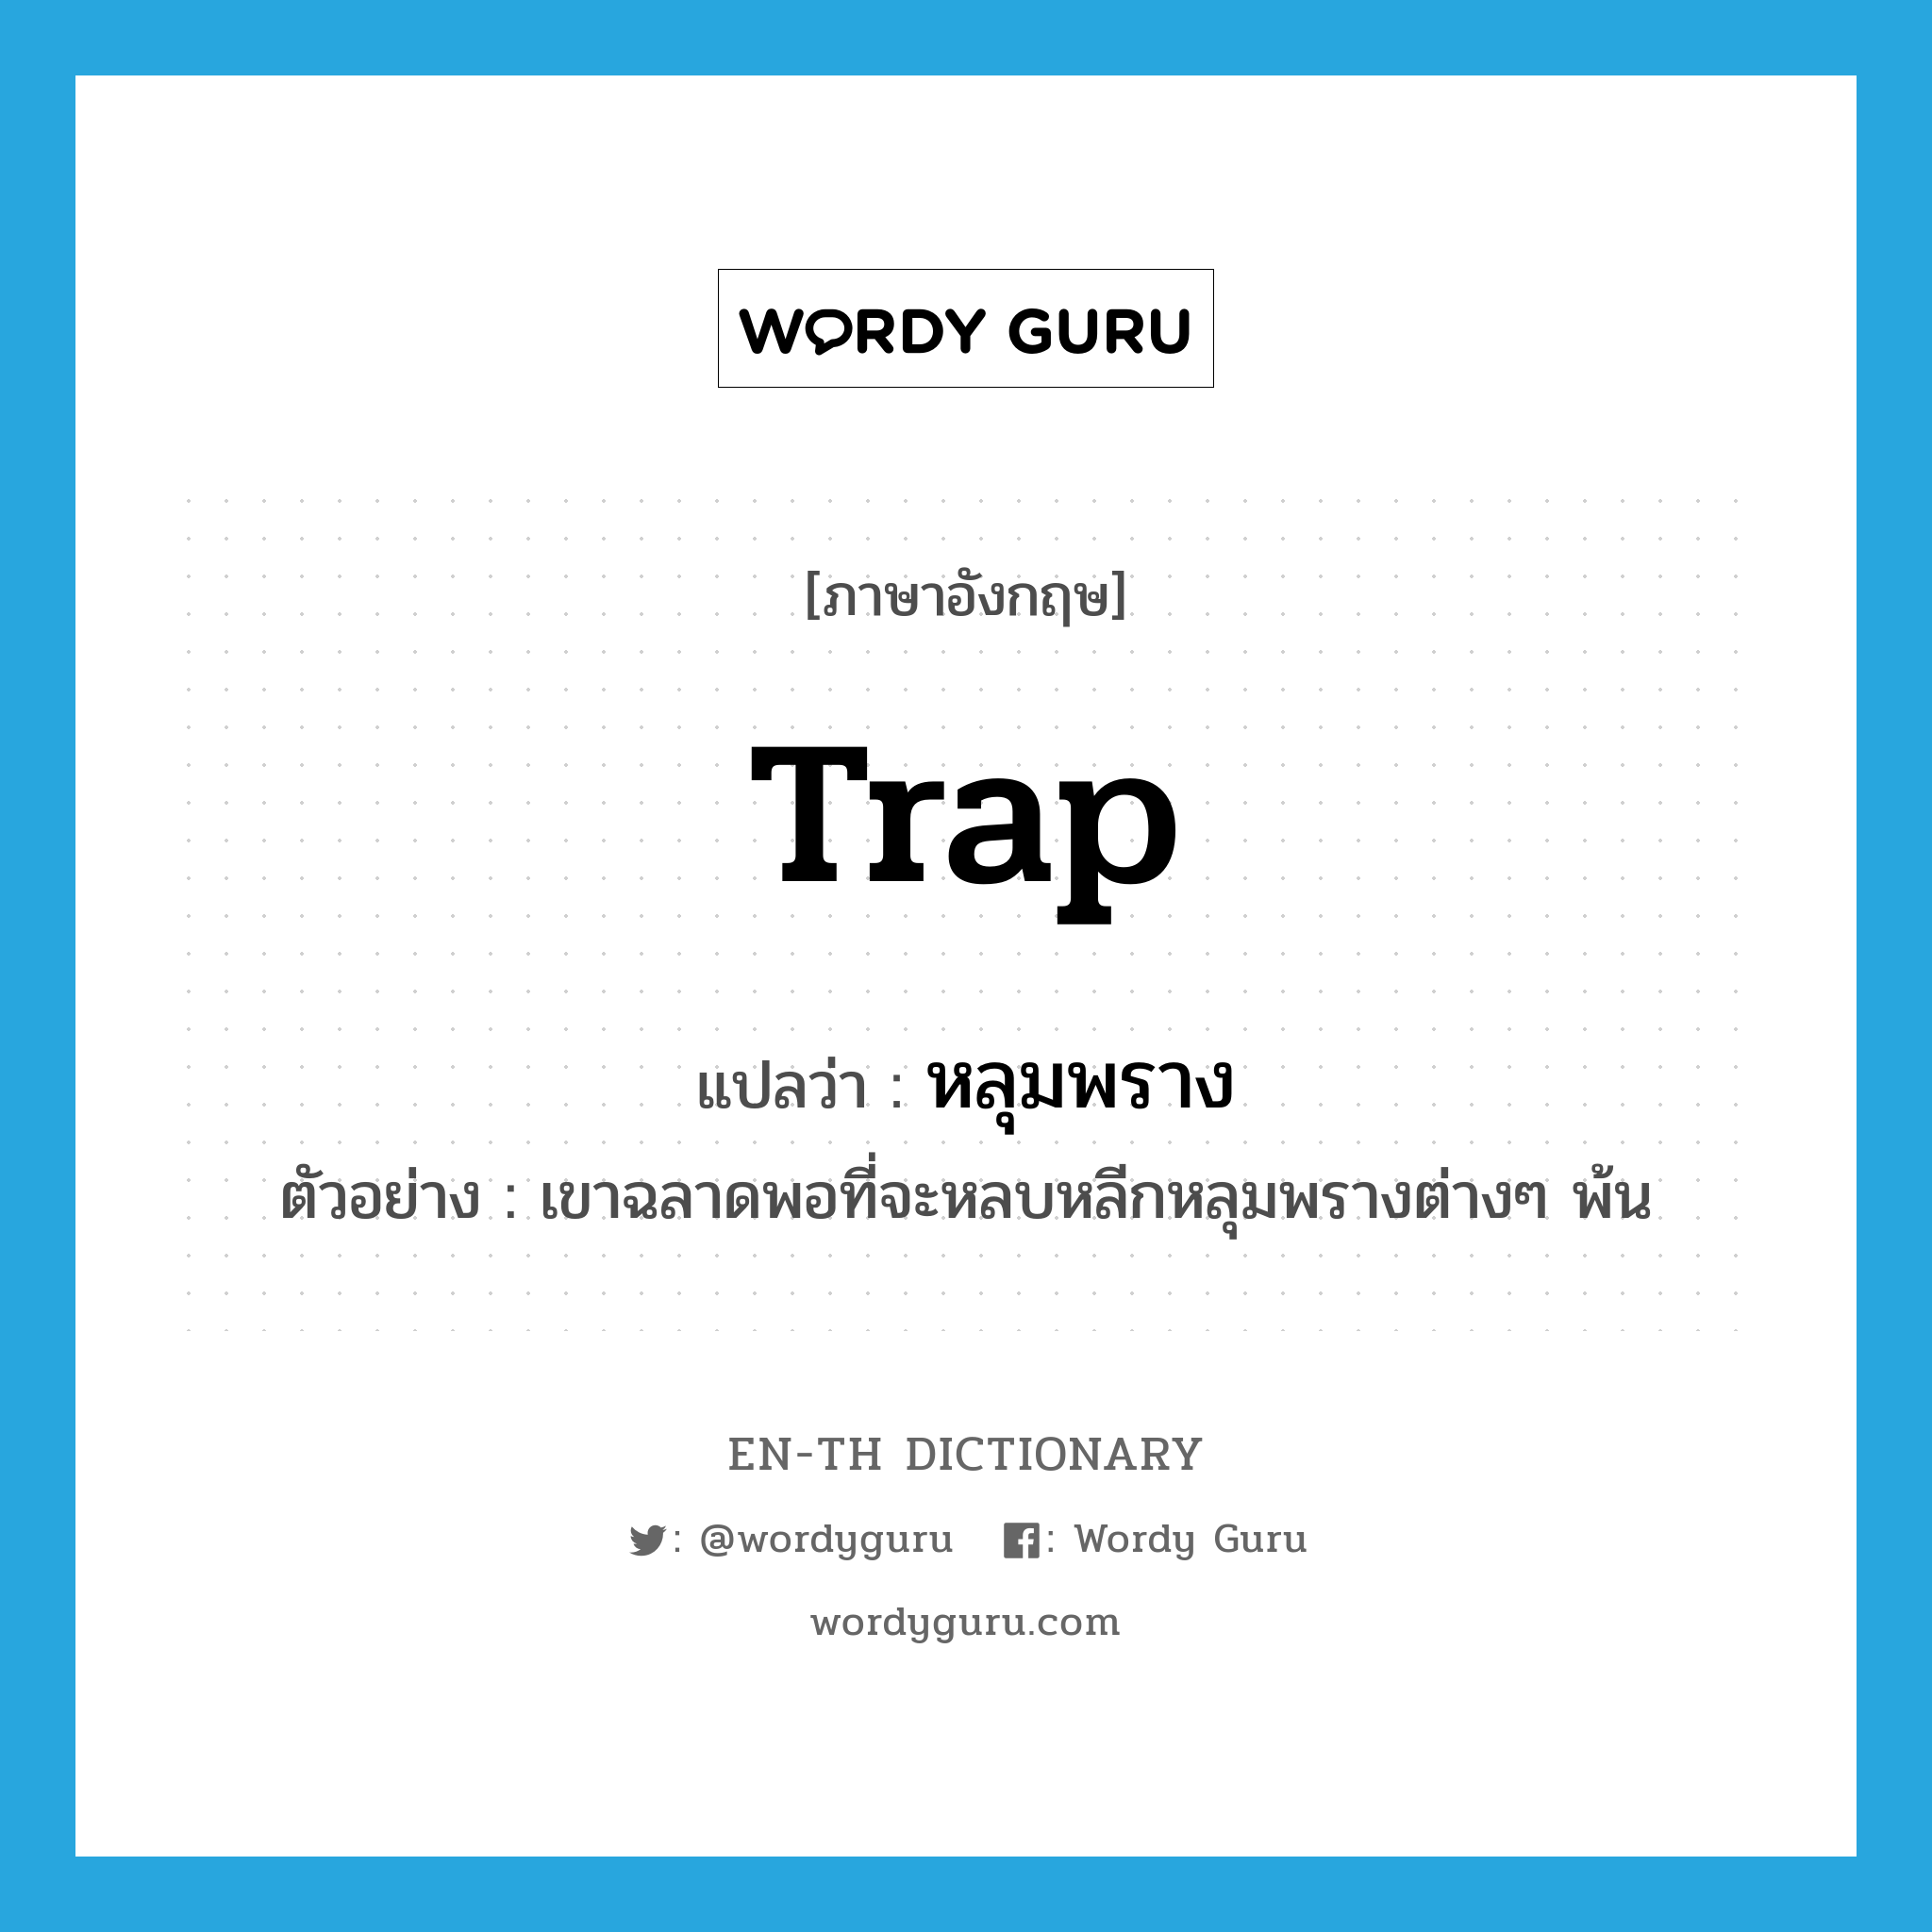 trap แปลว่า?, คำศัพท์ภาษาอังกฤษ trap แปลว่า หลุมพราง ประเภท N ตัวอย่าง เขาฉลาดพอที่จะหลบหลีกหลุมพรางต่างๆ พ้น หมวด N